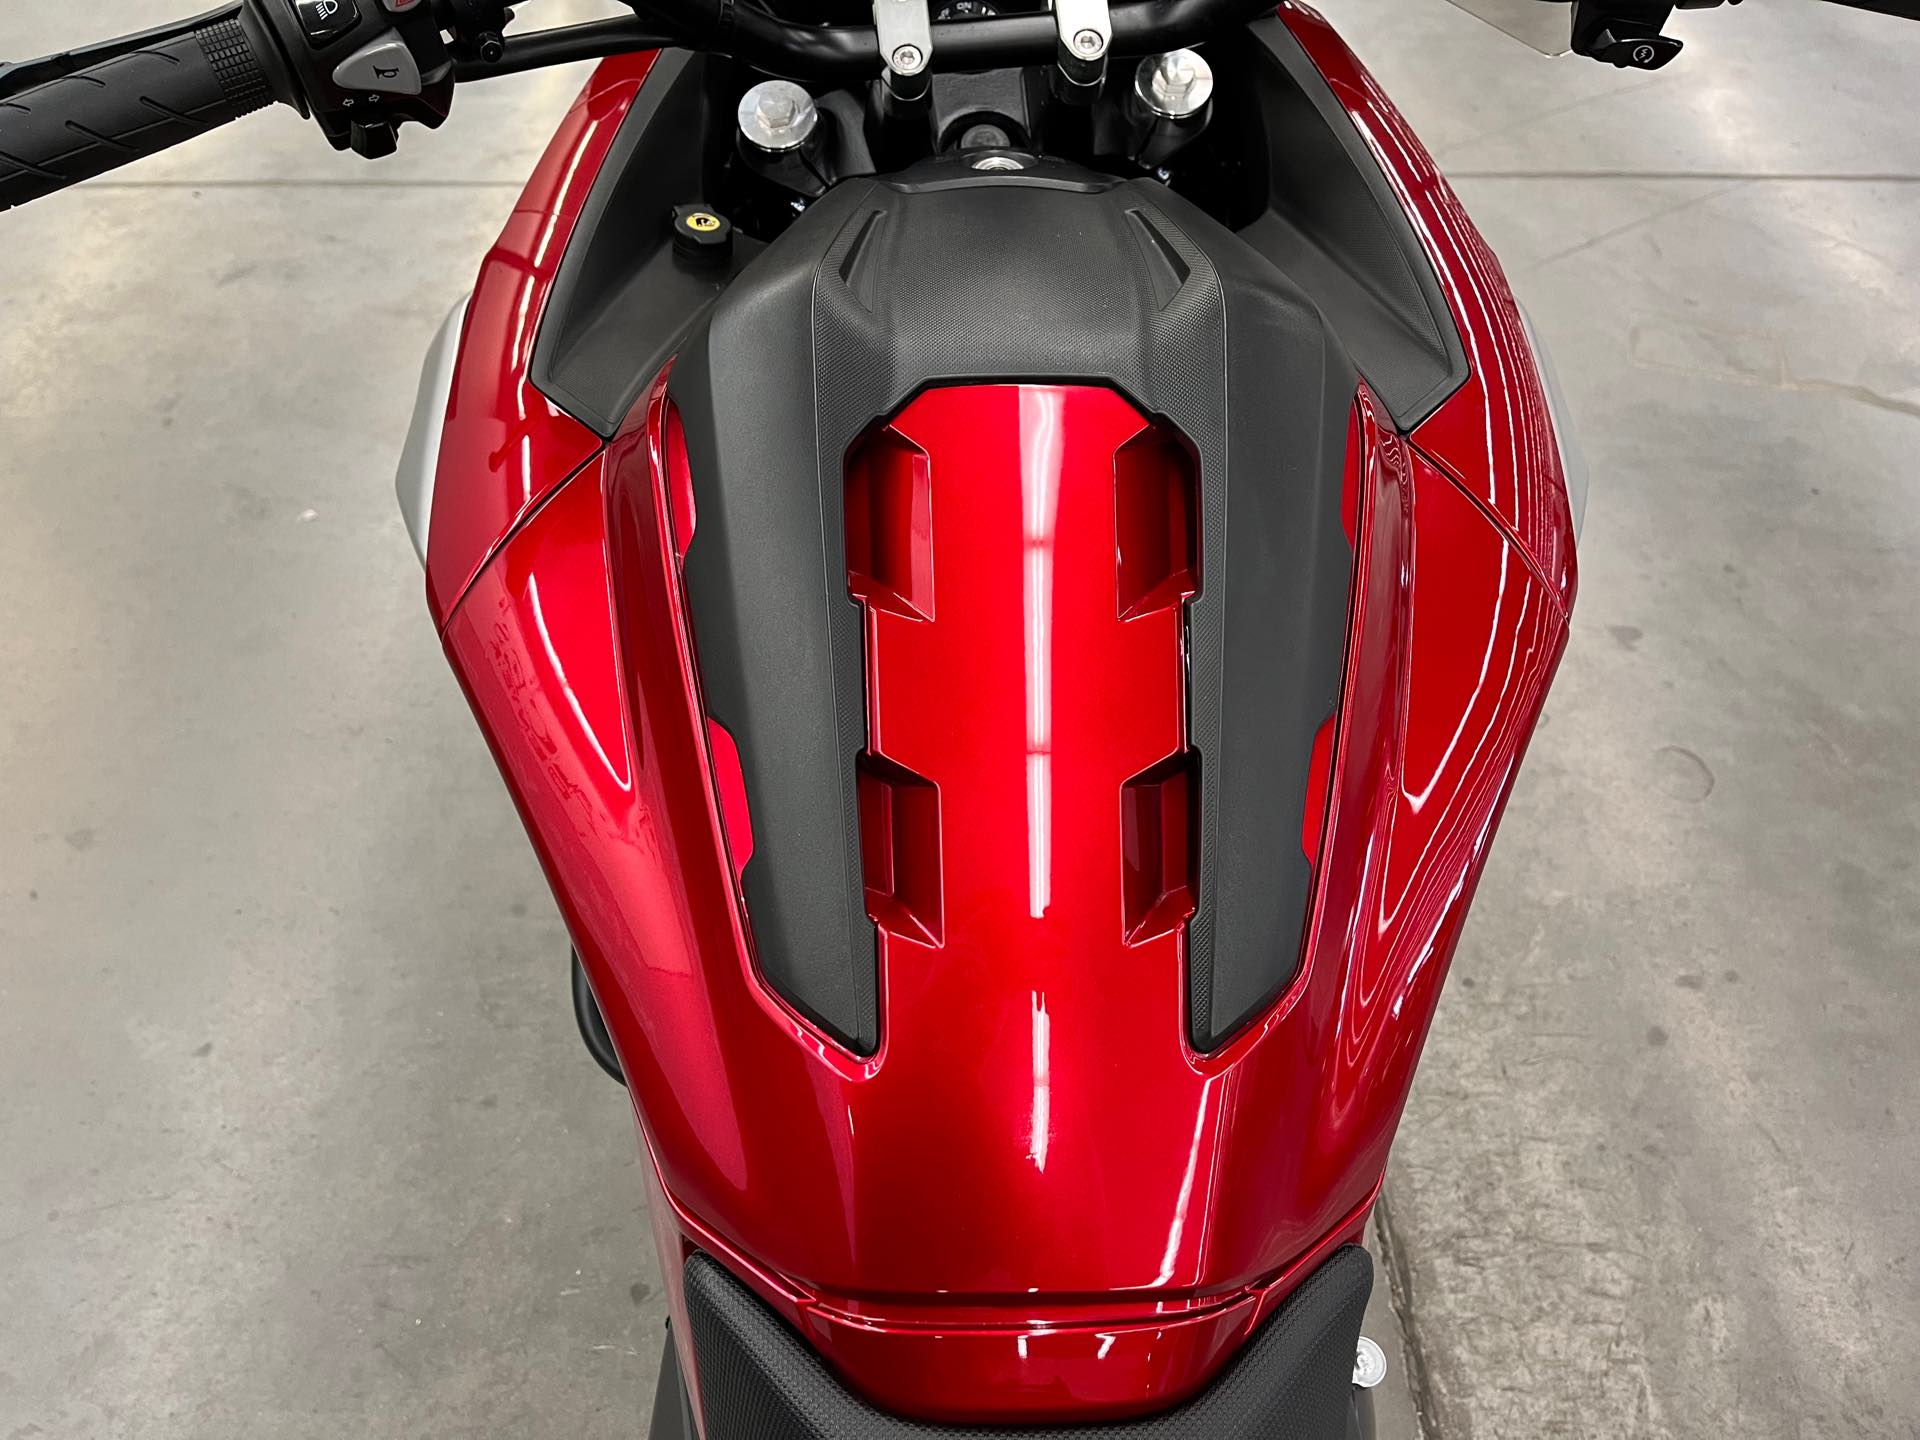 2017 Honda NC700X Base at Aces Motorcycles - Denver